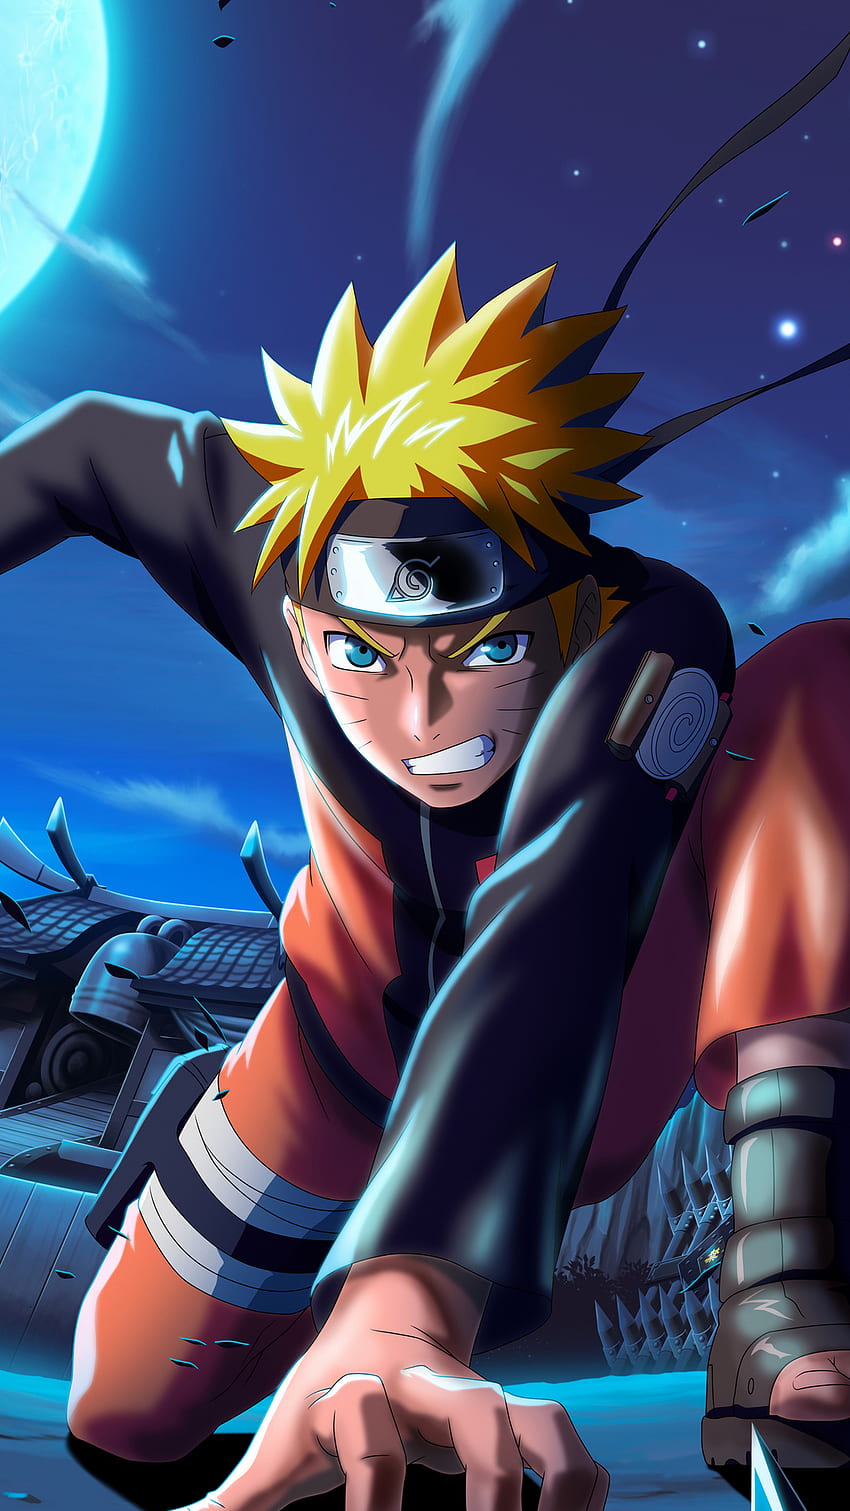 Hãy trải nghiệm ngay phong cách siêu đẳng với Naruto x Boruto Ninja Voltage - một trò chơi mobile hấp dẫn và đầy khoa học mới. Khám phá vũ trụ Naruto bằng cách chơi game và cùng cảm nhận trải nghiệm hoàn toàn mới.